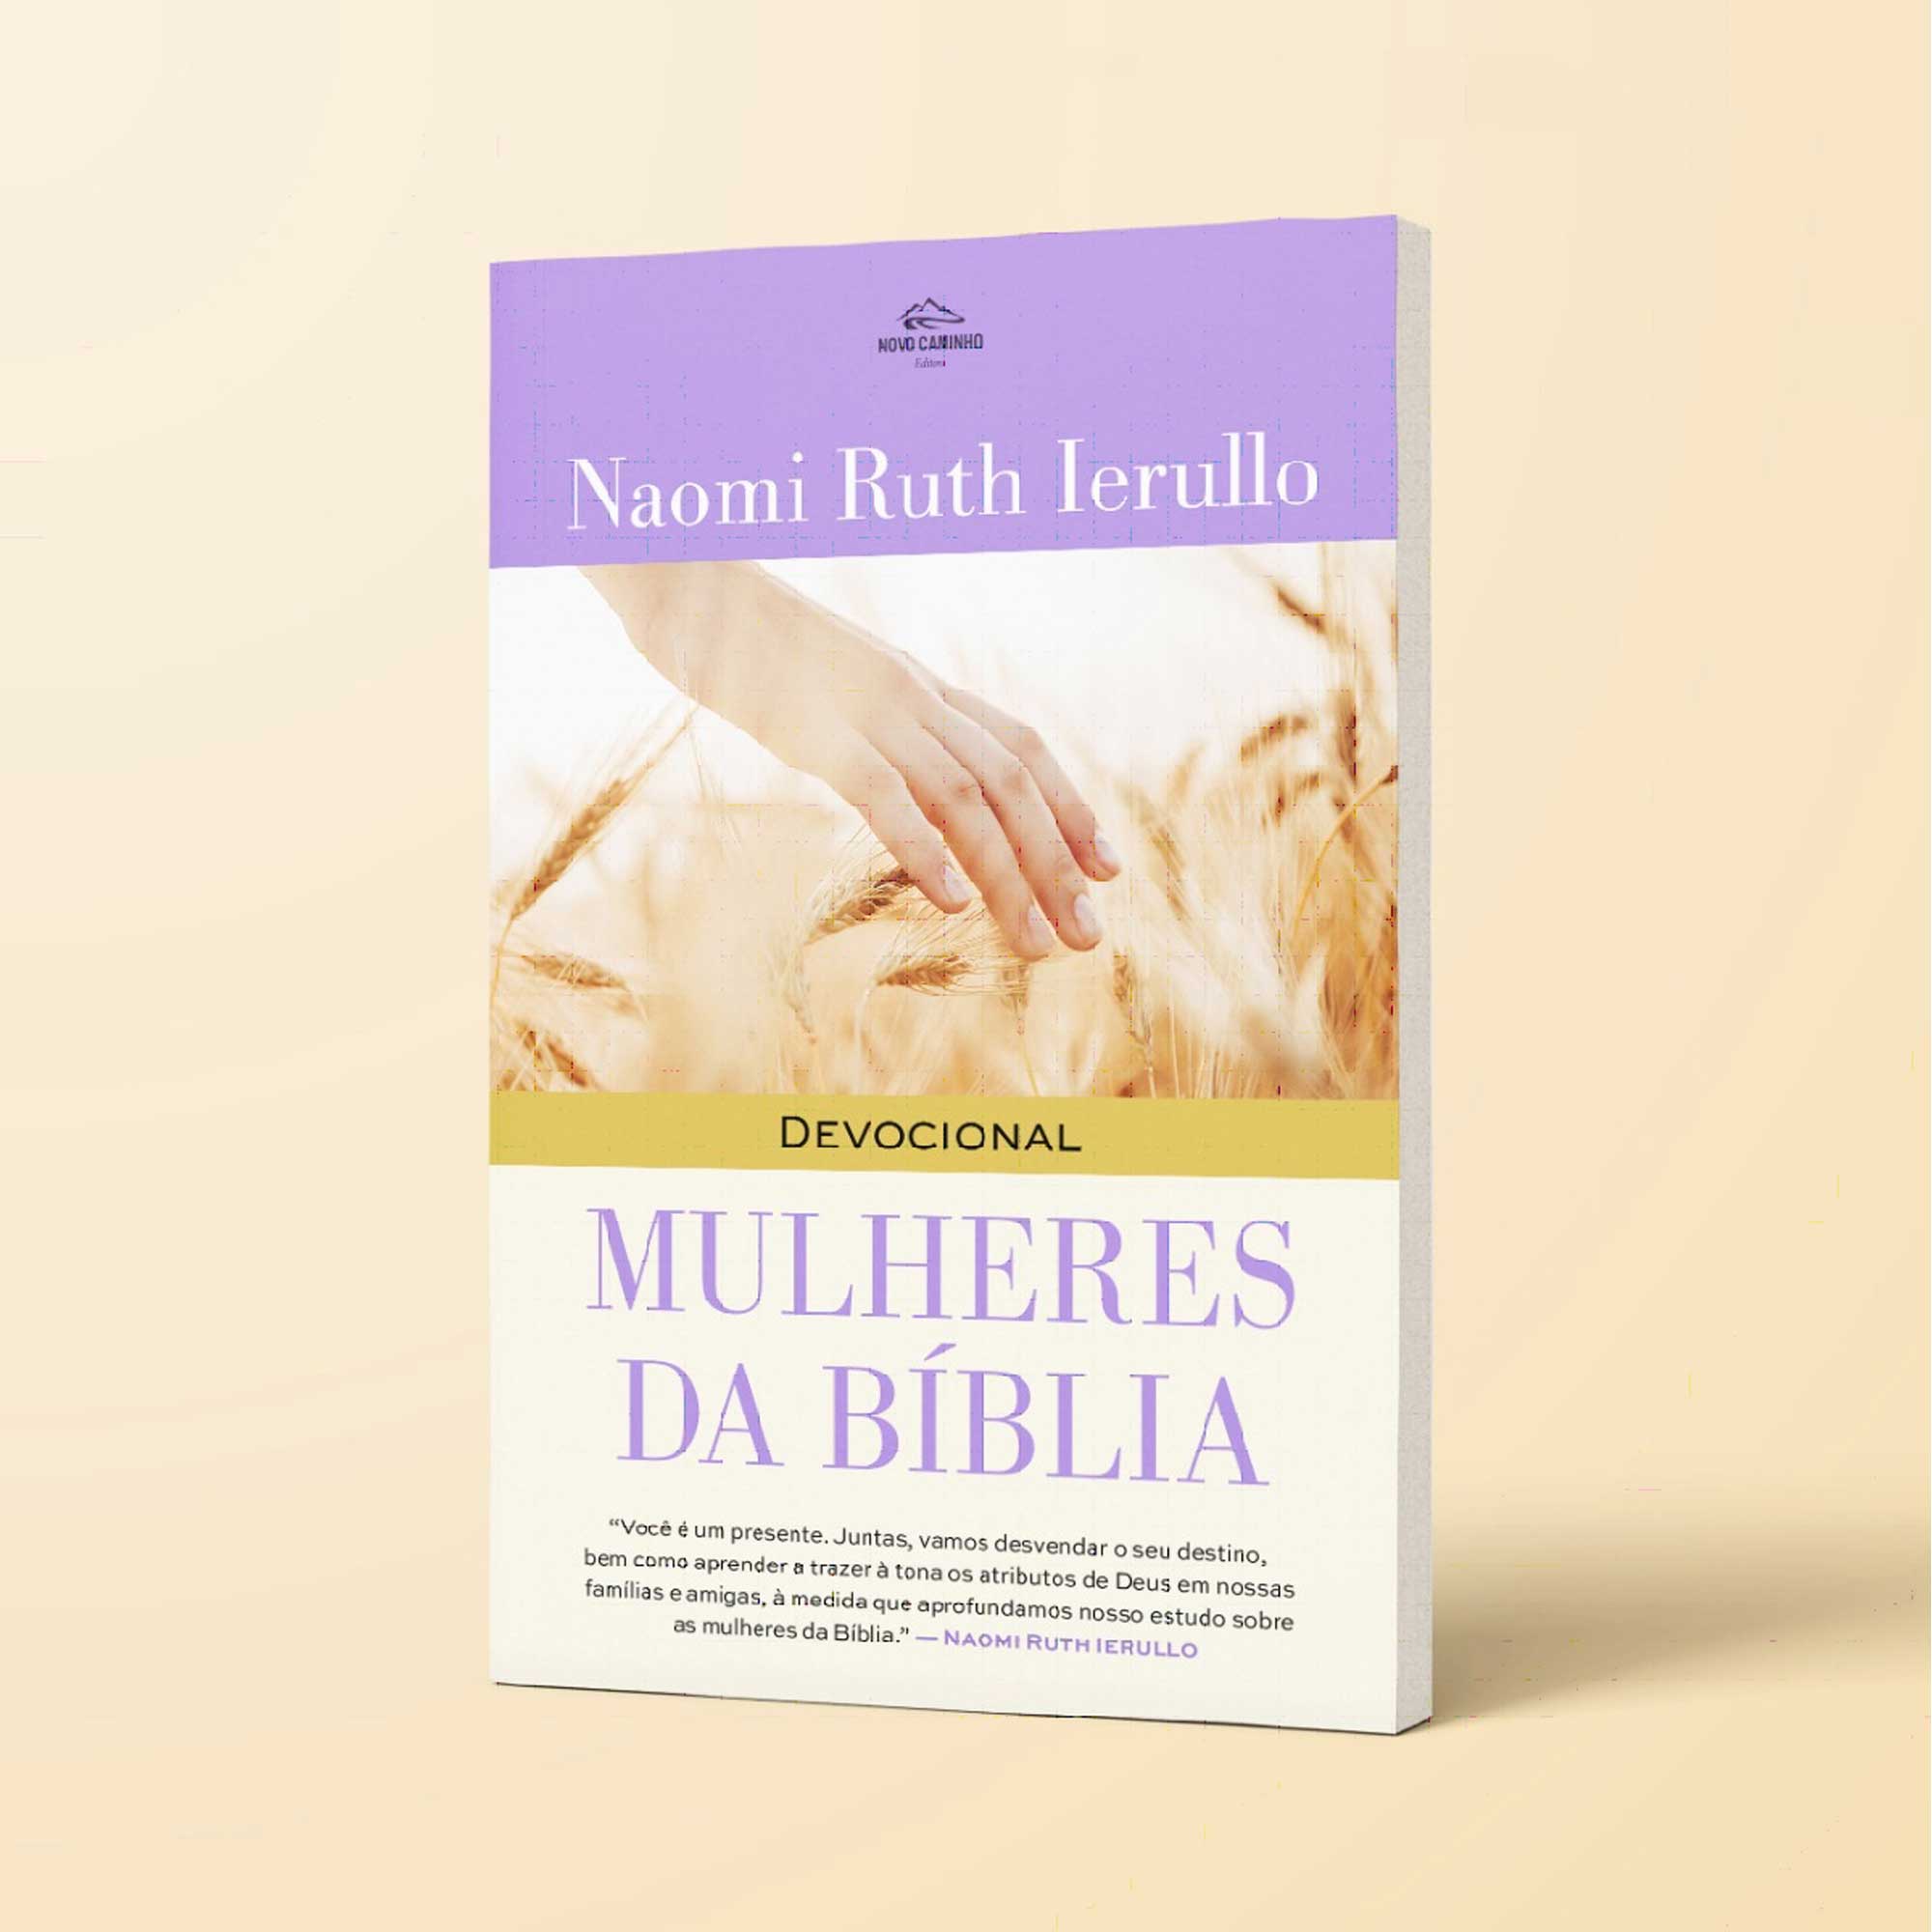 Mulheres Da Biblia 40 Day Devotional book Portuguese by Naomi Ruth Ierullo